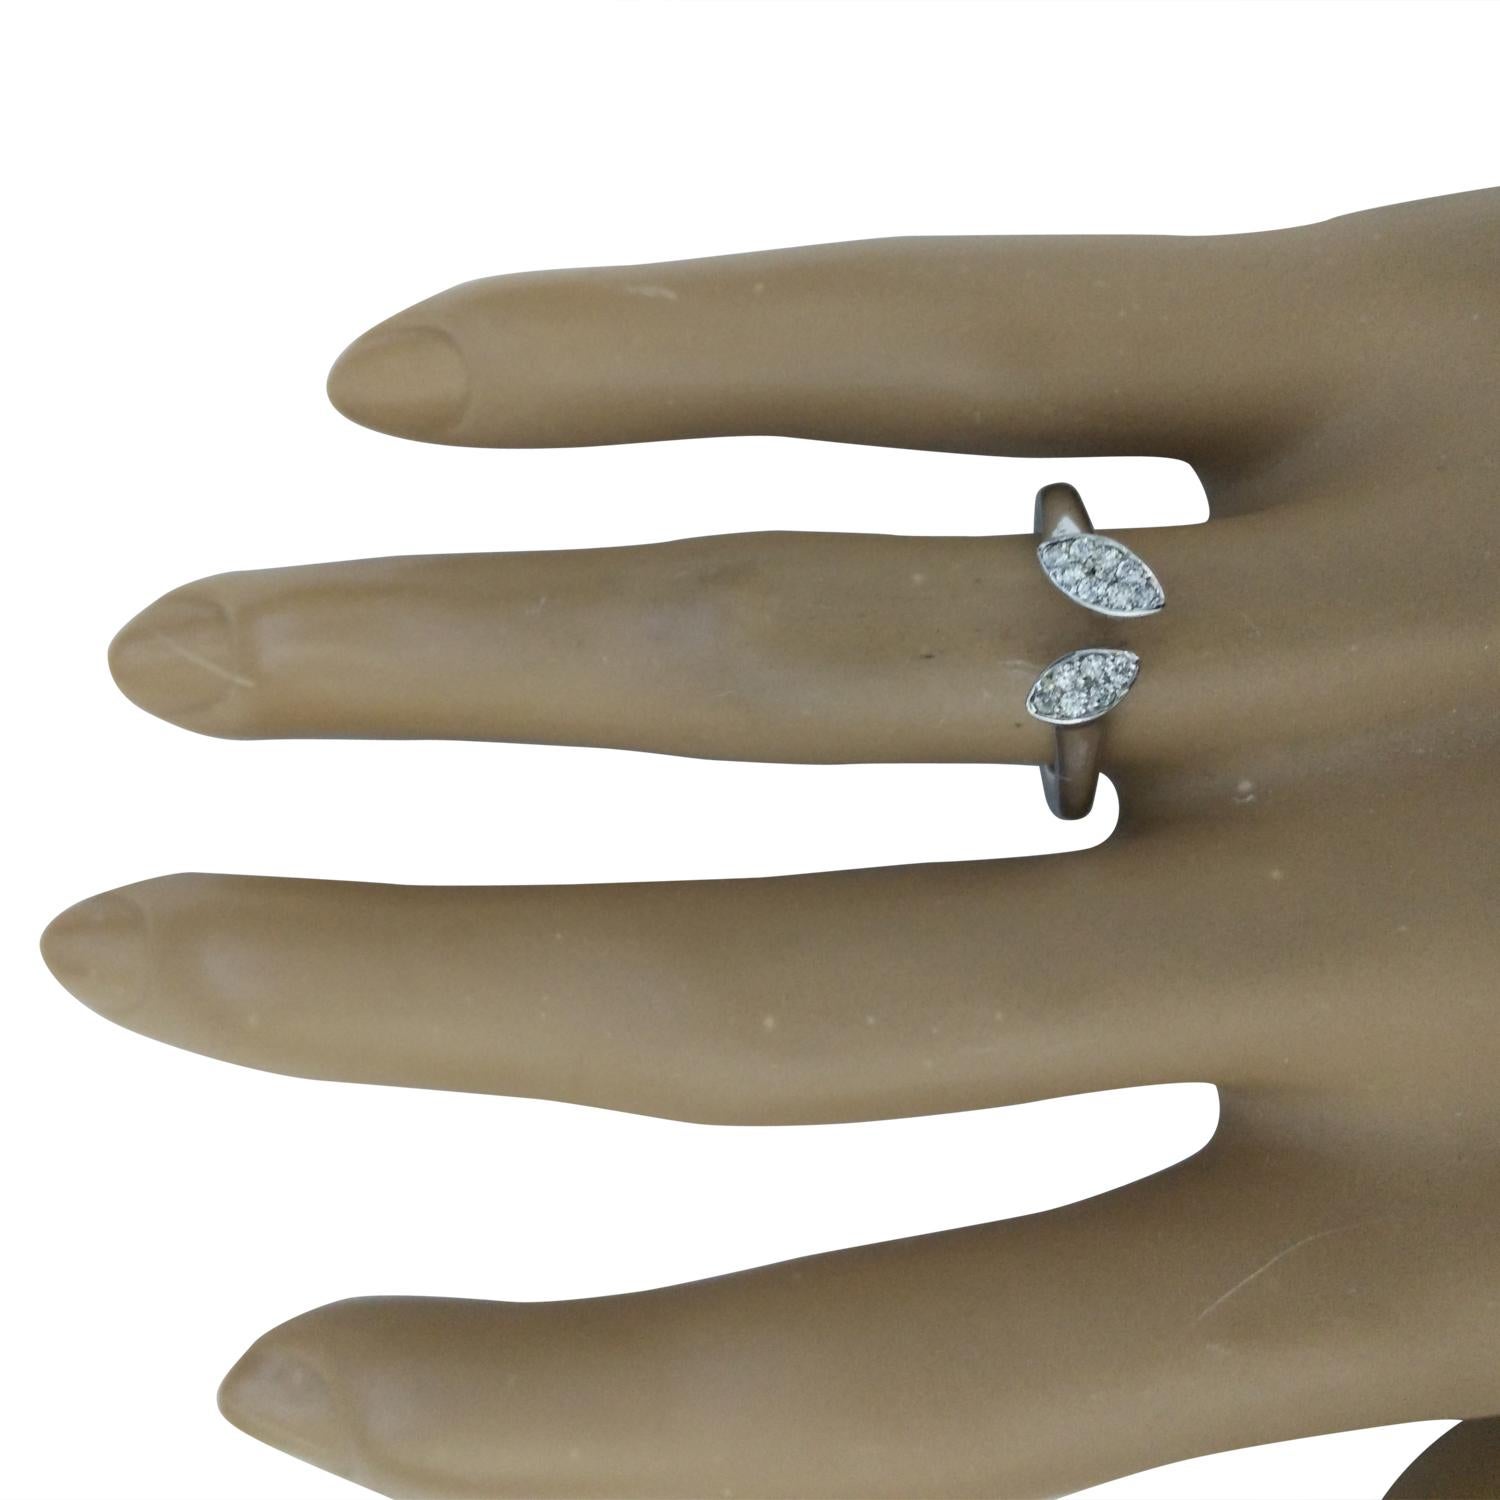 0.15 Carat 14 Karat Solid White Gold Diamond Ring (Bague en or blanc massif de 0.15 carat)
Estampillé : 14K
Taille de l'anneau : 7 
Poids total de l'anneau : 2,6 grammes 
Poids du diamant : 0,15 carat (couleur F-G, pureté VS2-SI1) 
Quantité :